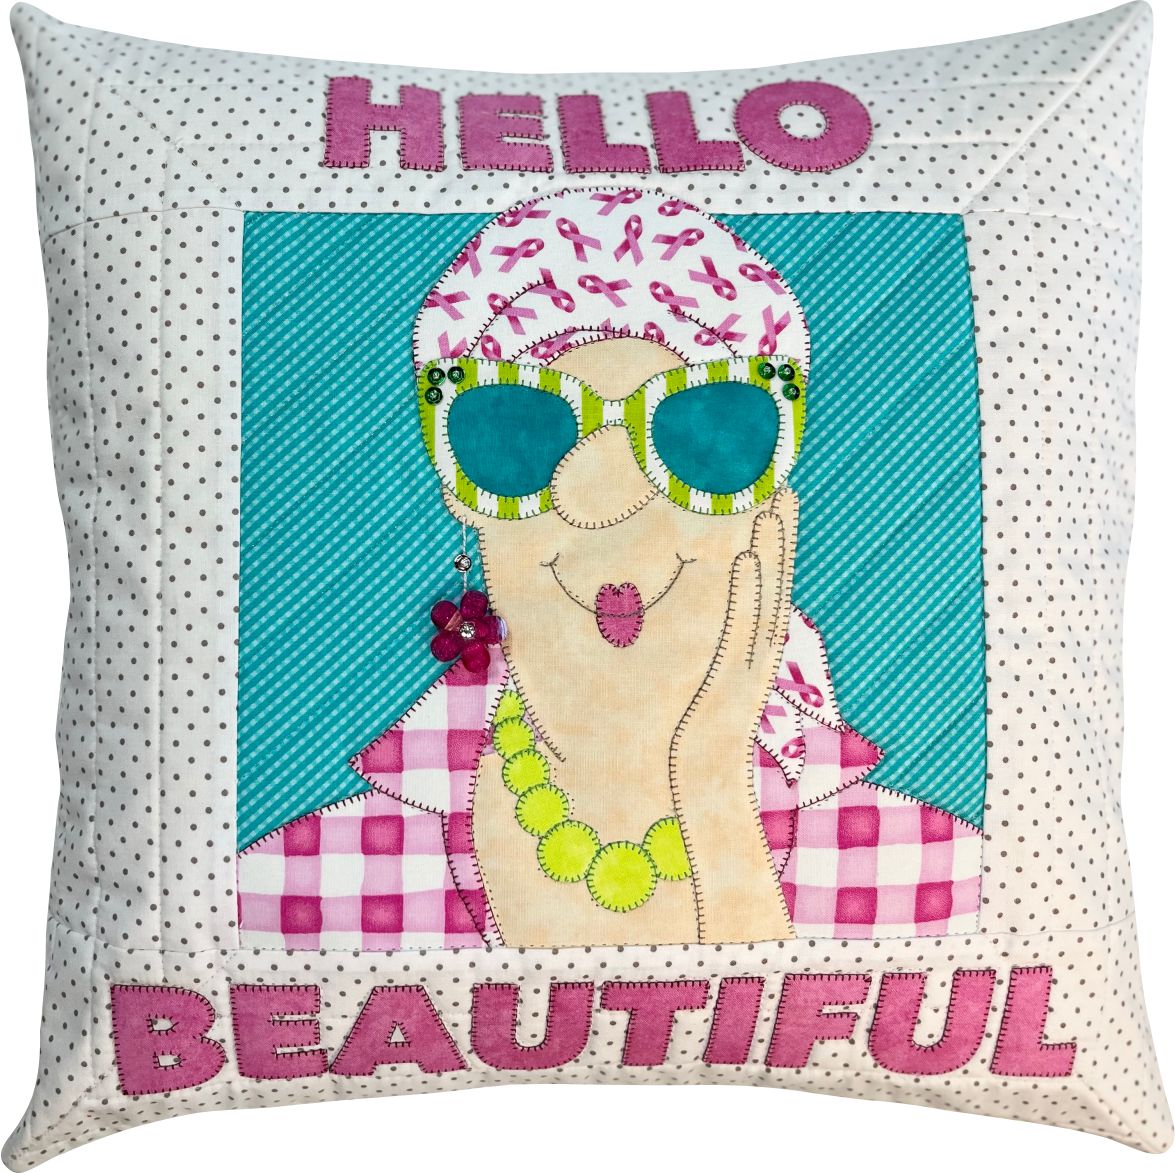 Hello Beautiful Wallhanging & Pillow Pattern